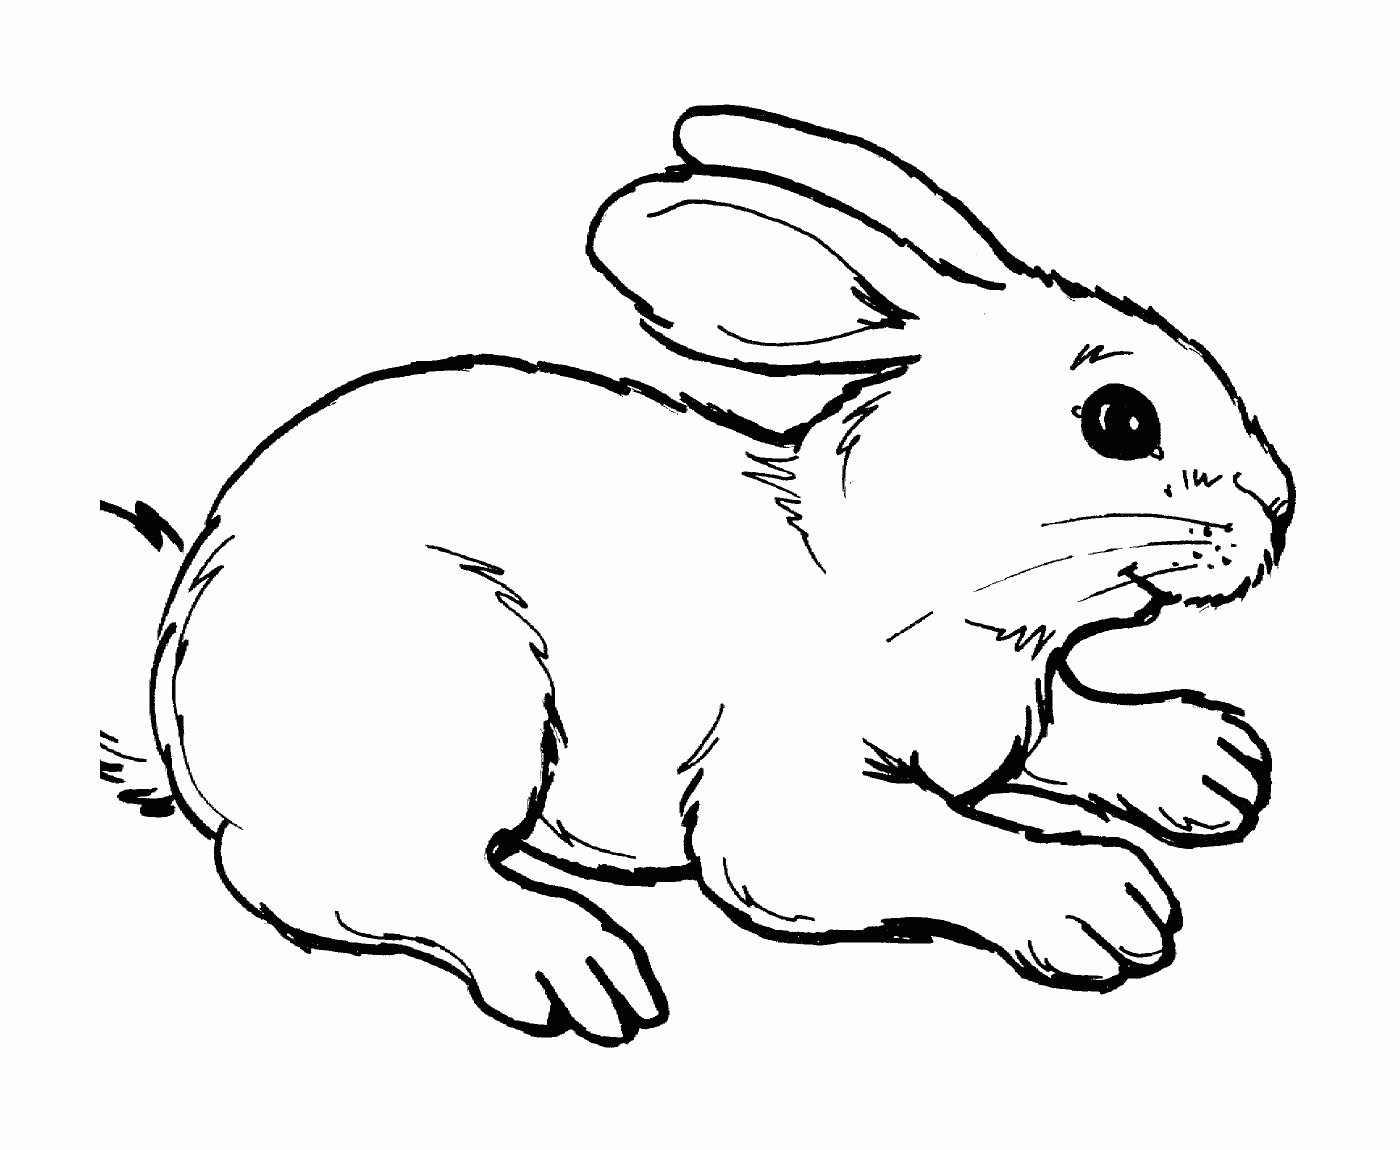  Un coniglio realistico e carino 